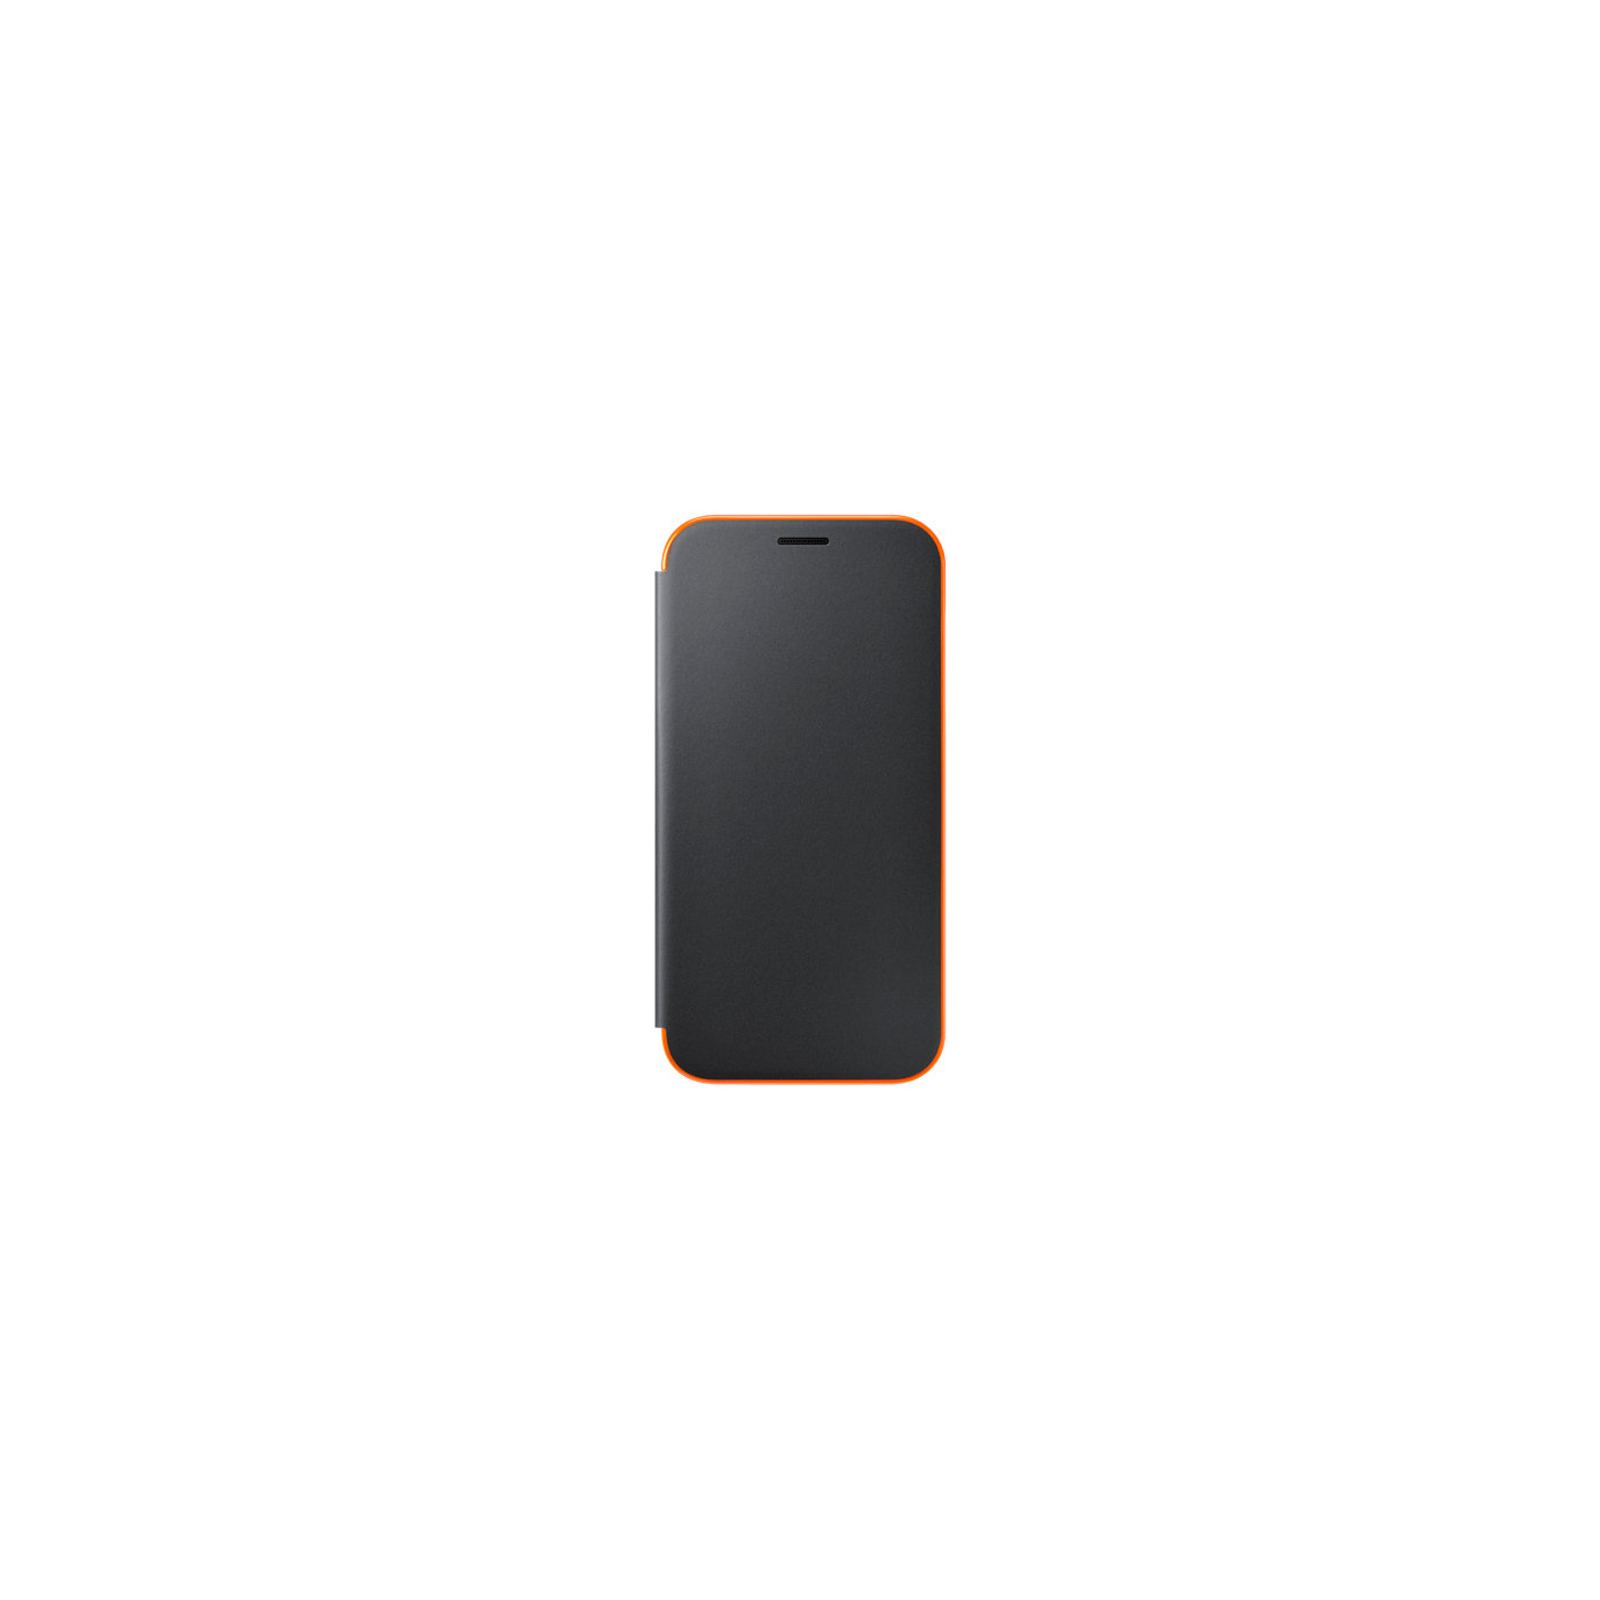 Чехол для мобильного телефона Samsung для A320 - Neon Flip Cover (Black) (EF-FA320PBEGRU)